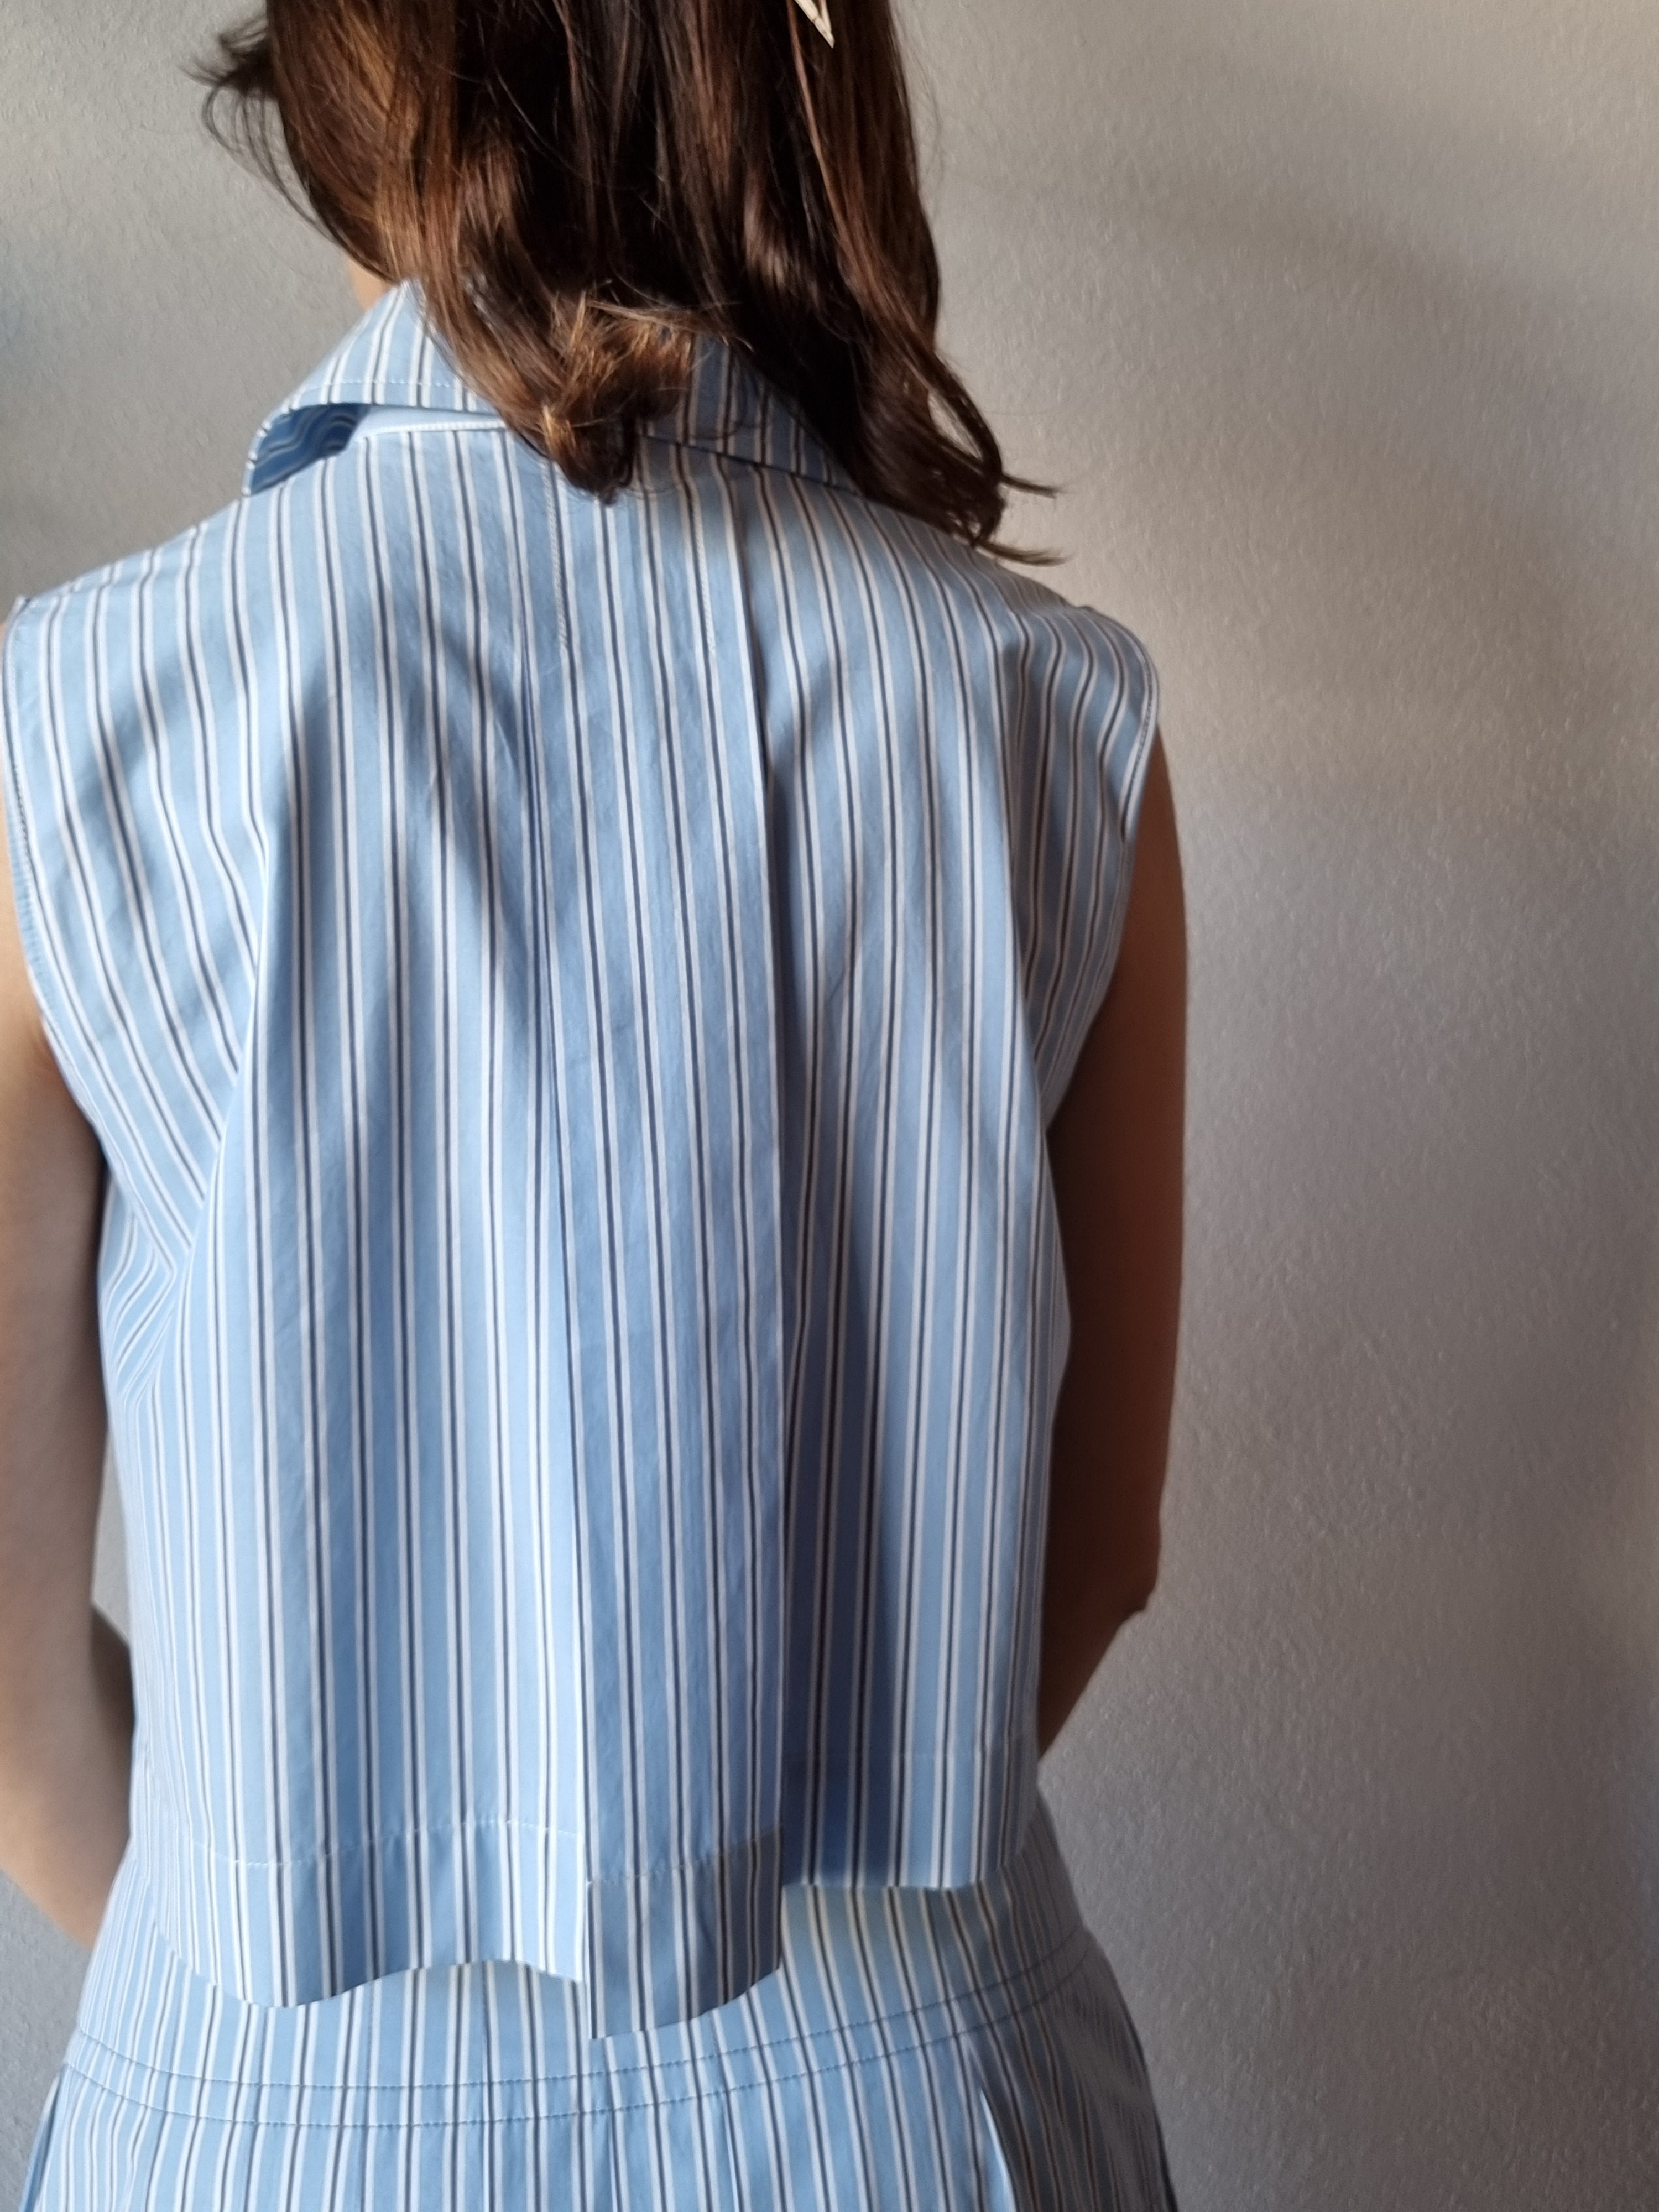 Alberta Ferretti – Camicia crop rigata blu